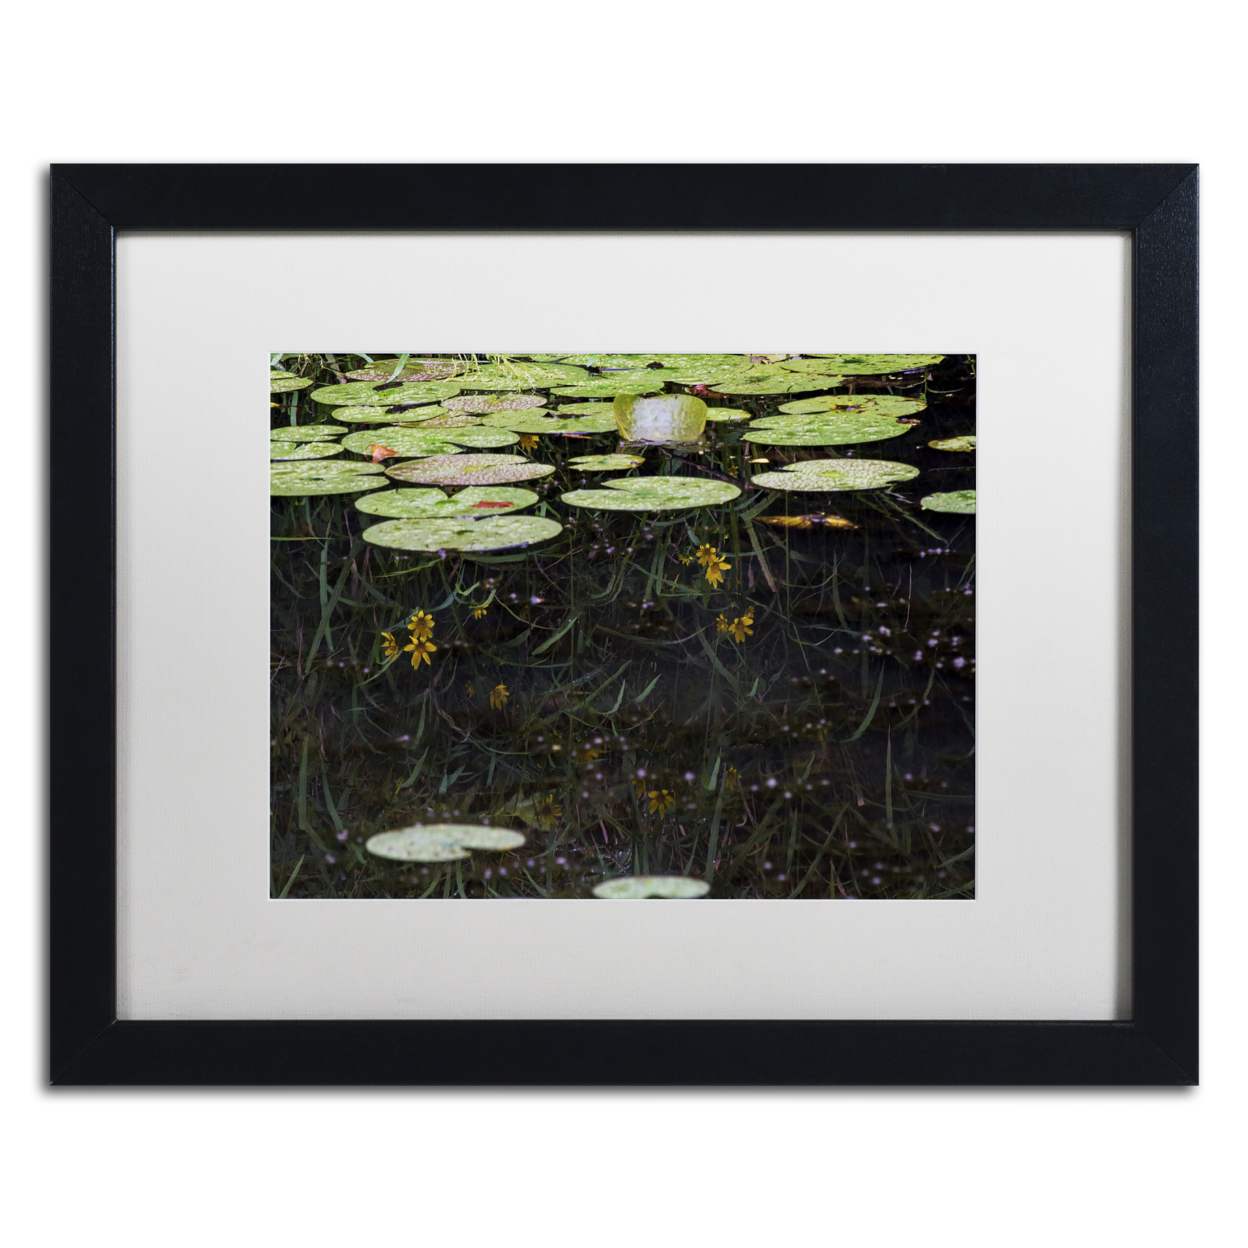 Kurt Shaffer 'Marsh Reflections' Black Wooden Framed Art 18 X 22 Inches